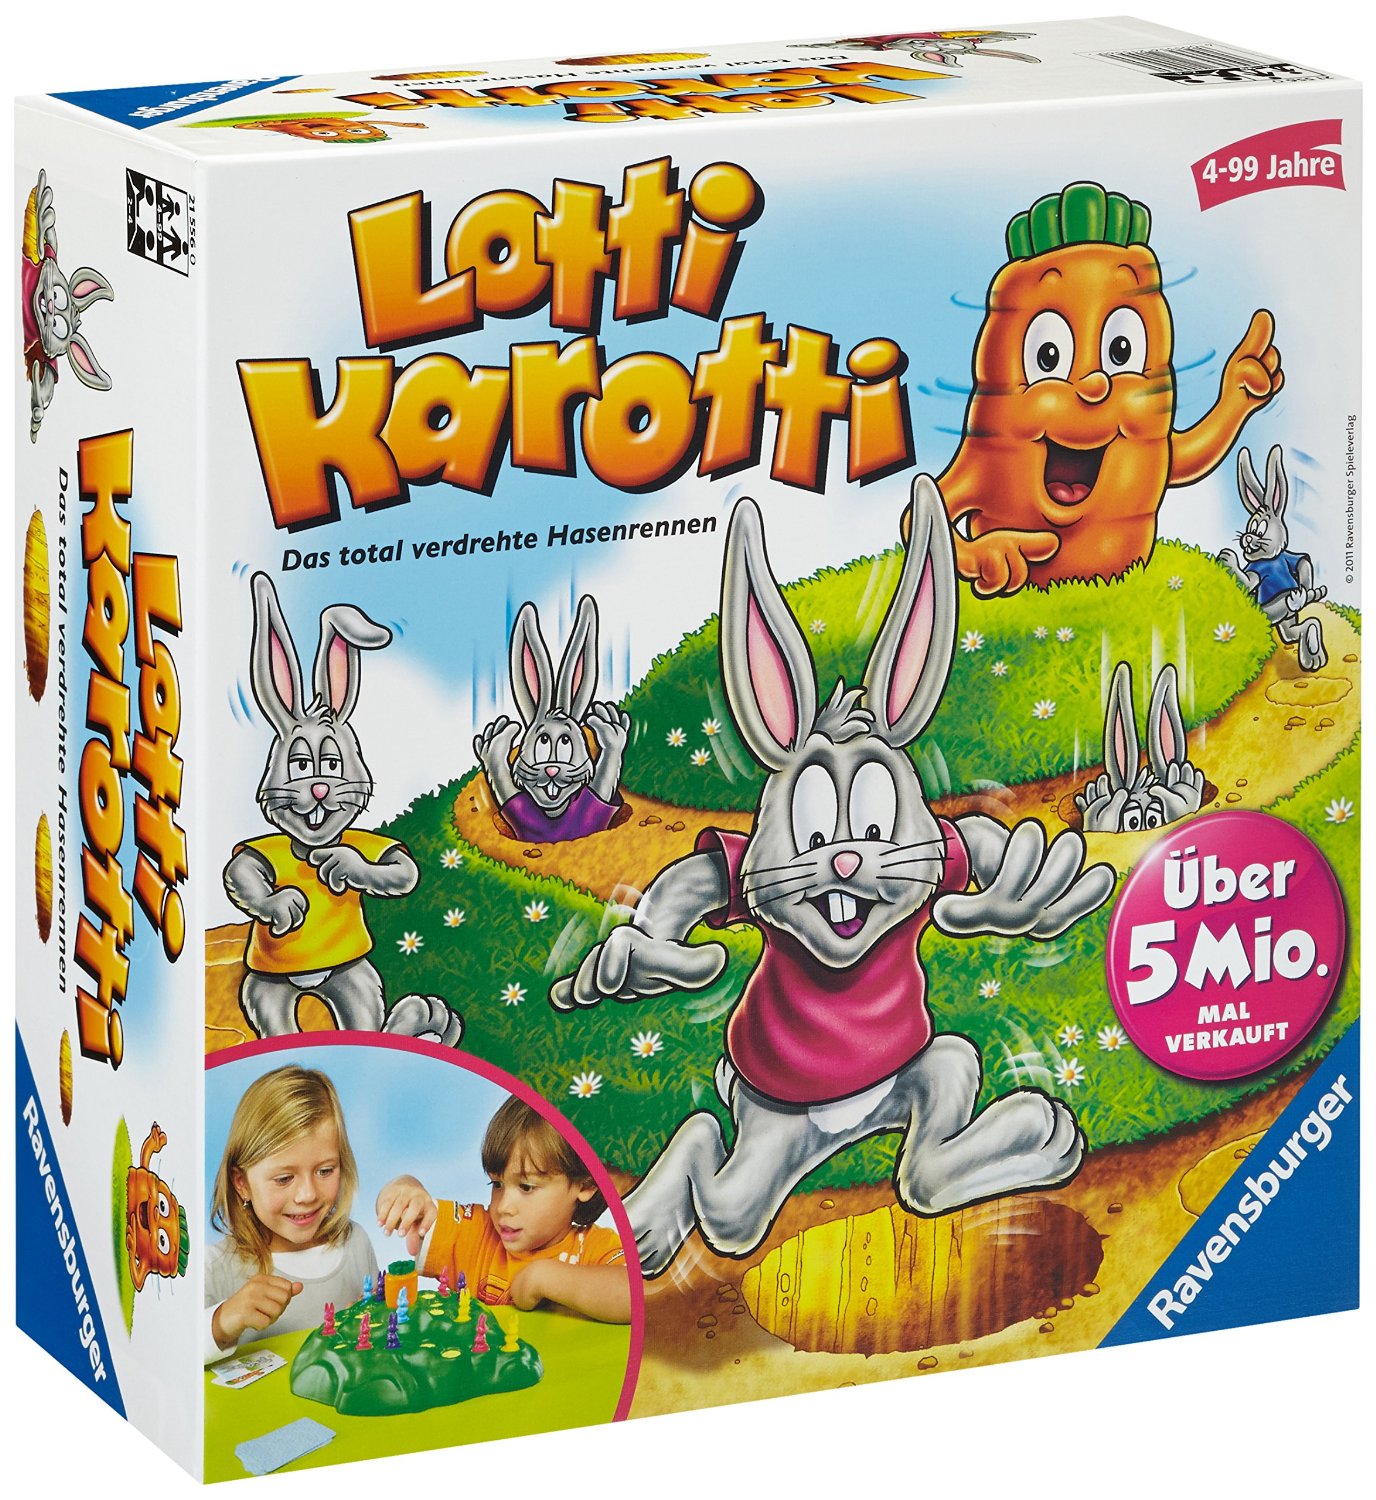 Lotti Karotti Spielanleitung